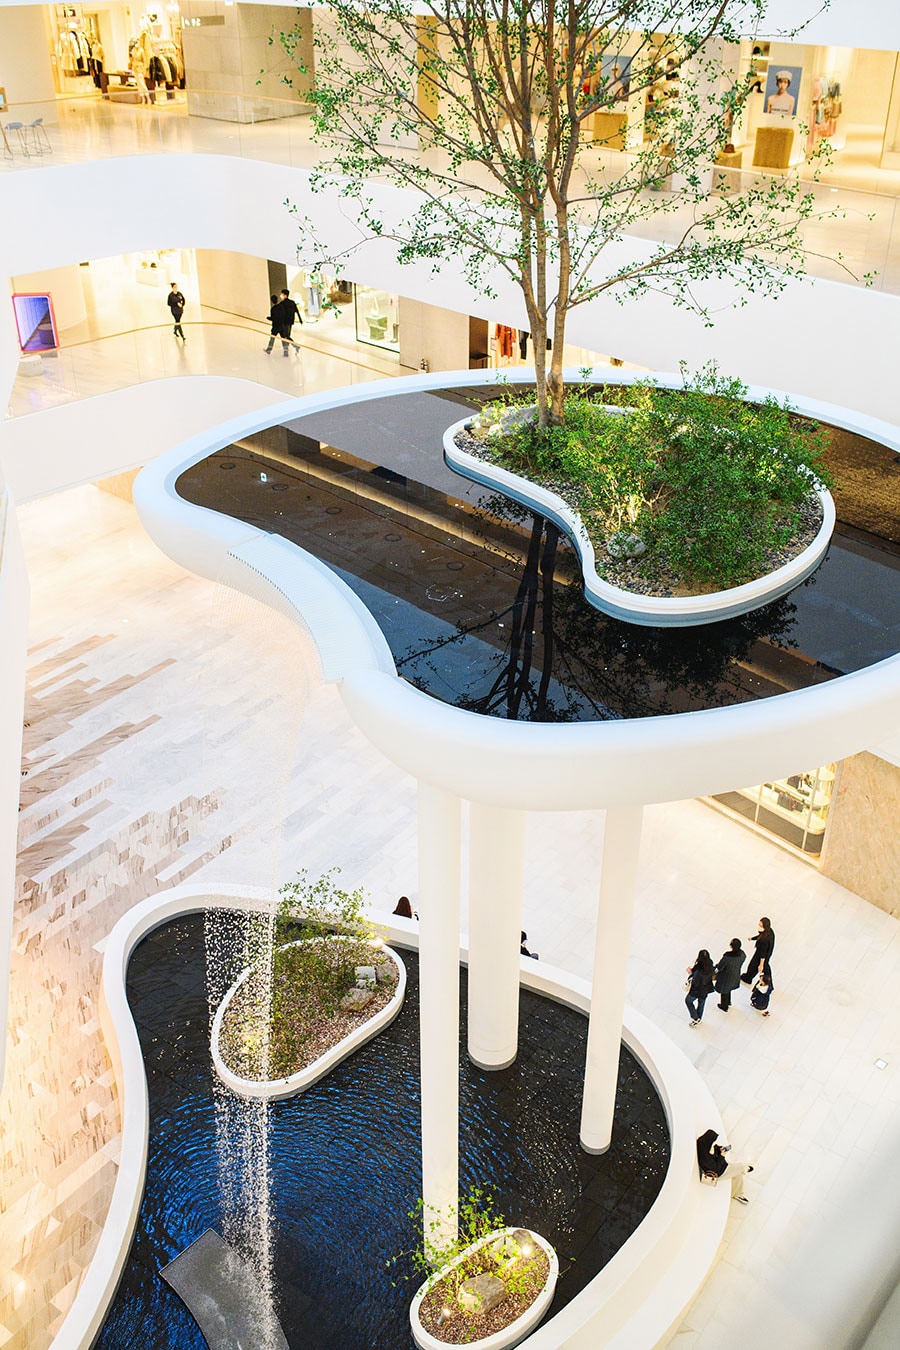 建物面積のうち半分がボタニカル空間という、百貨店のイメージを覆した設計。写真は滝が流れるアイコンスポットのウォーターフォール・ガーデン。©榎本麻美